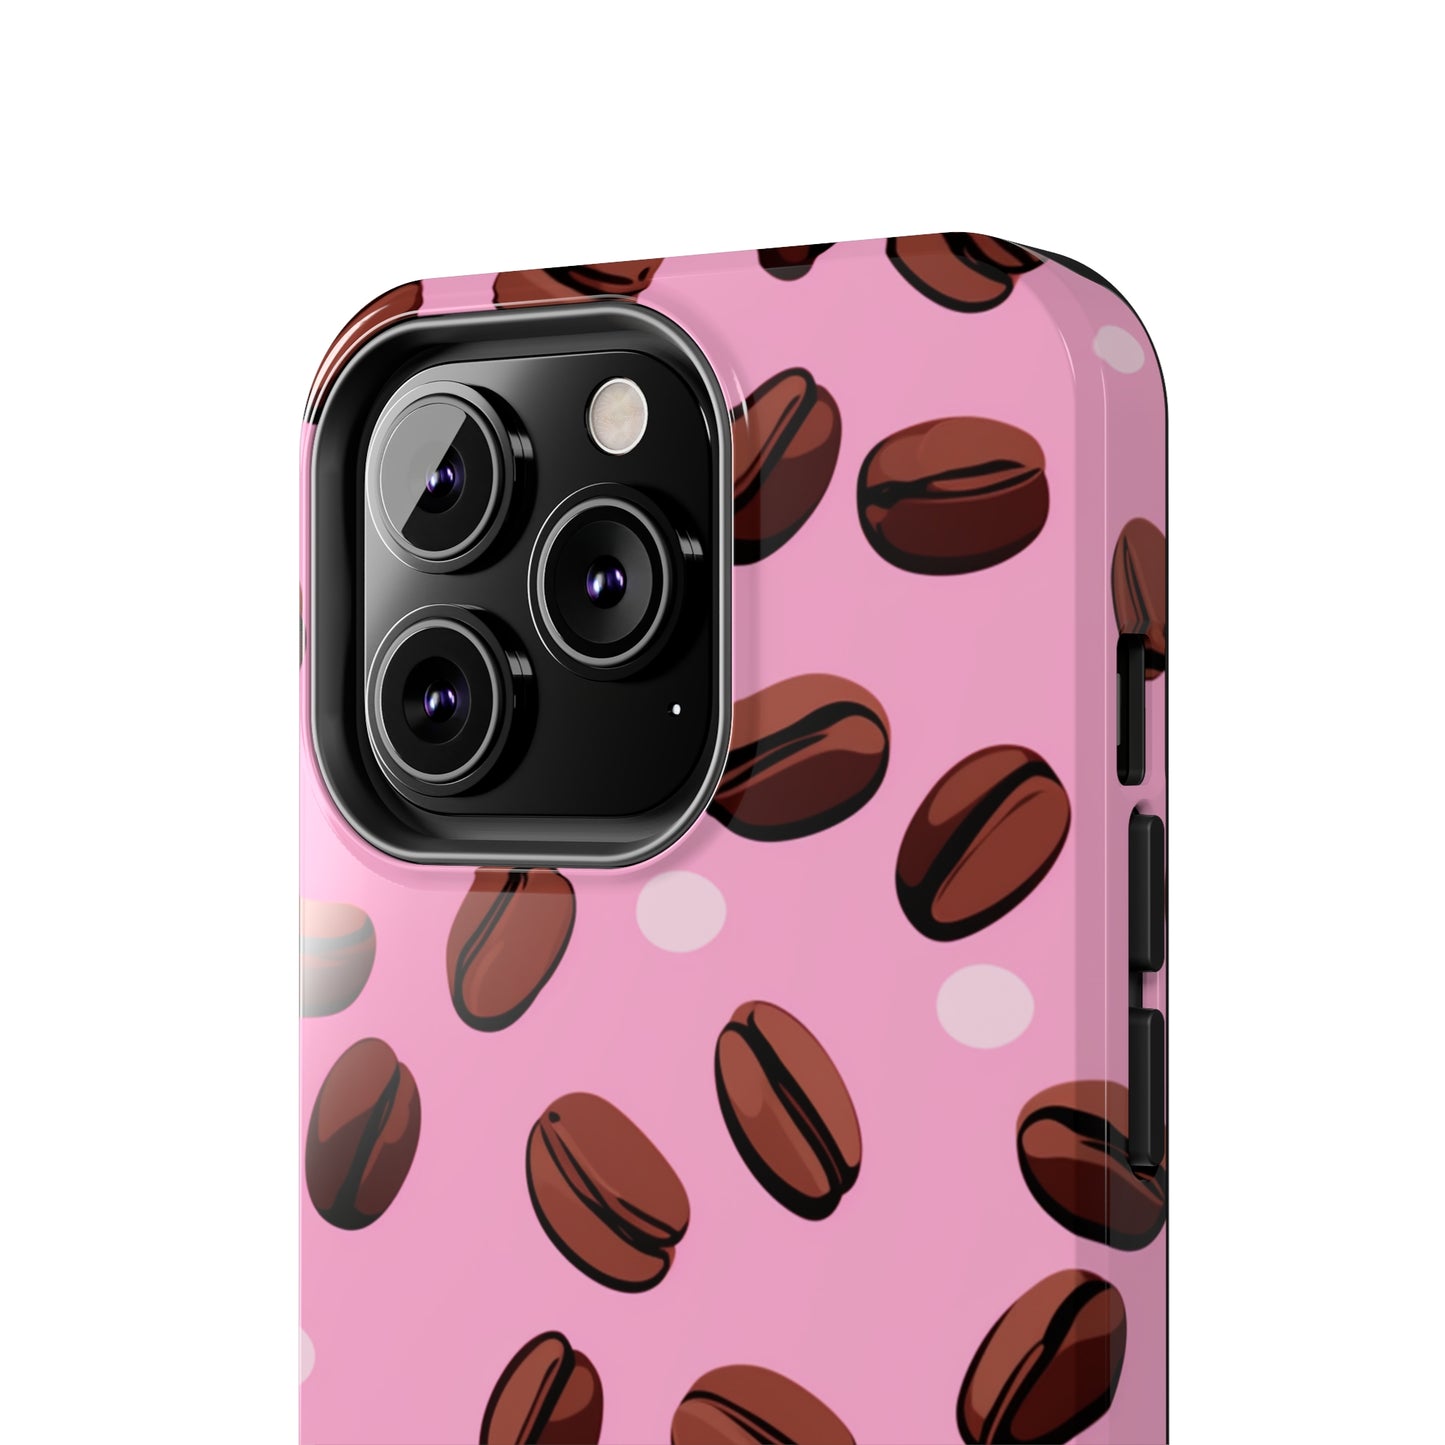 Morning Elixir: Fresh Coffee Bean Sensation | Energizing Pink iPhone Case